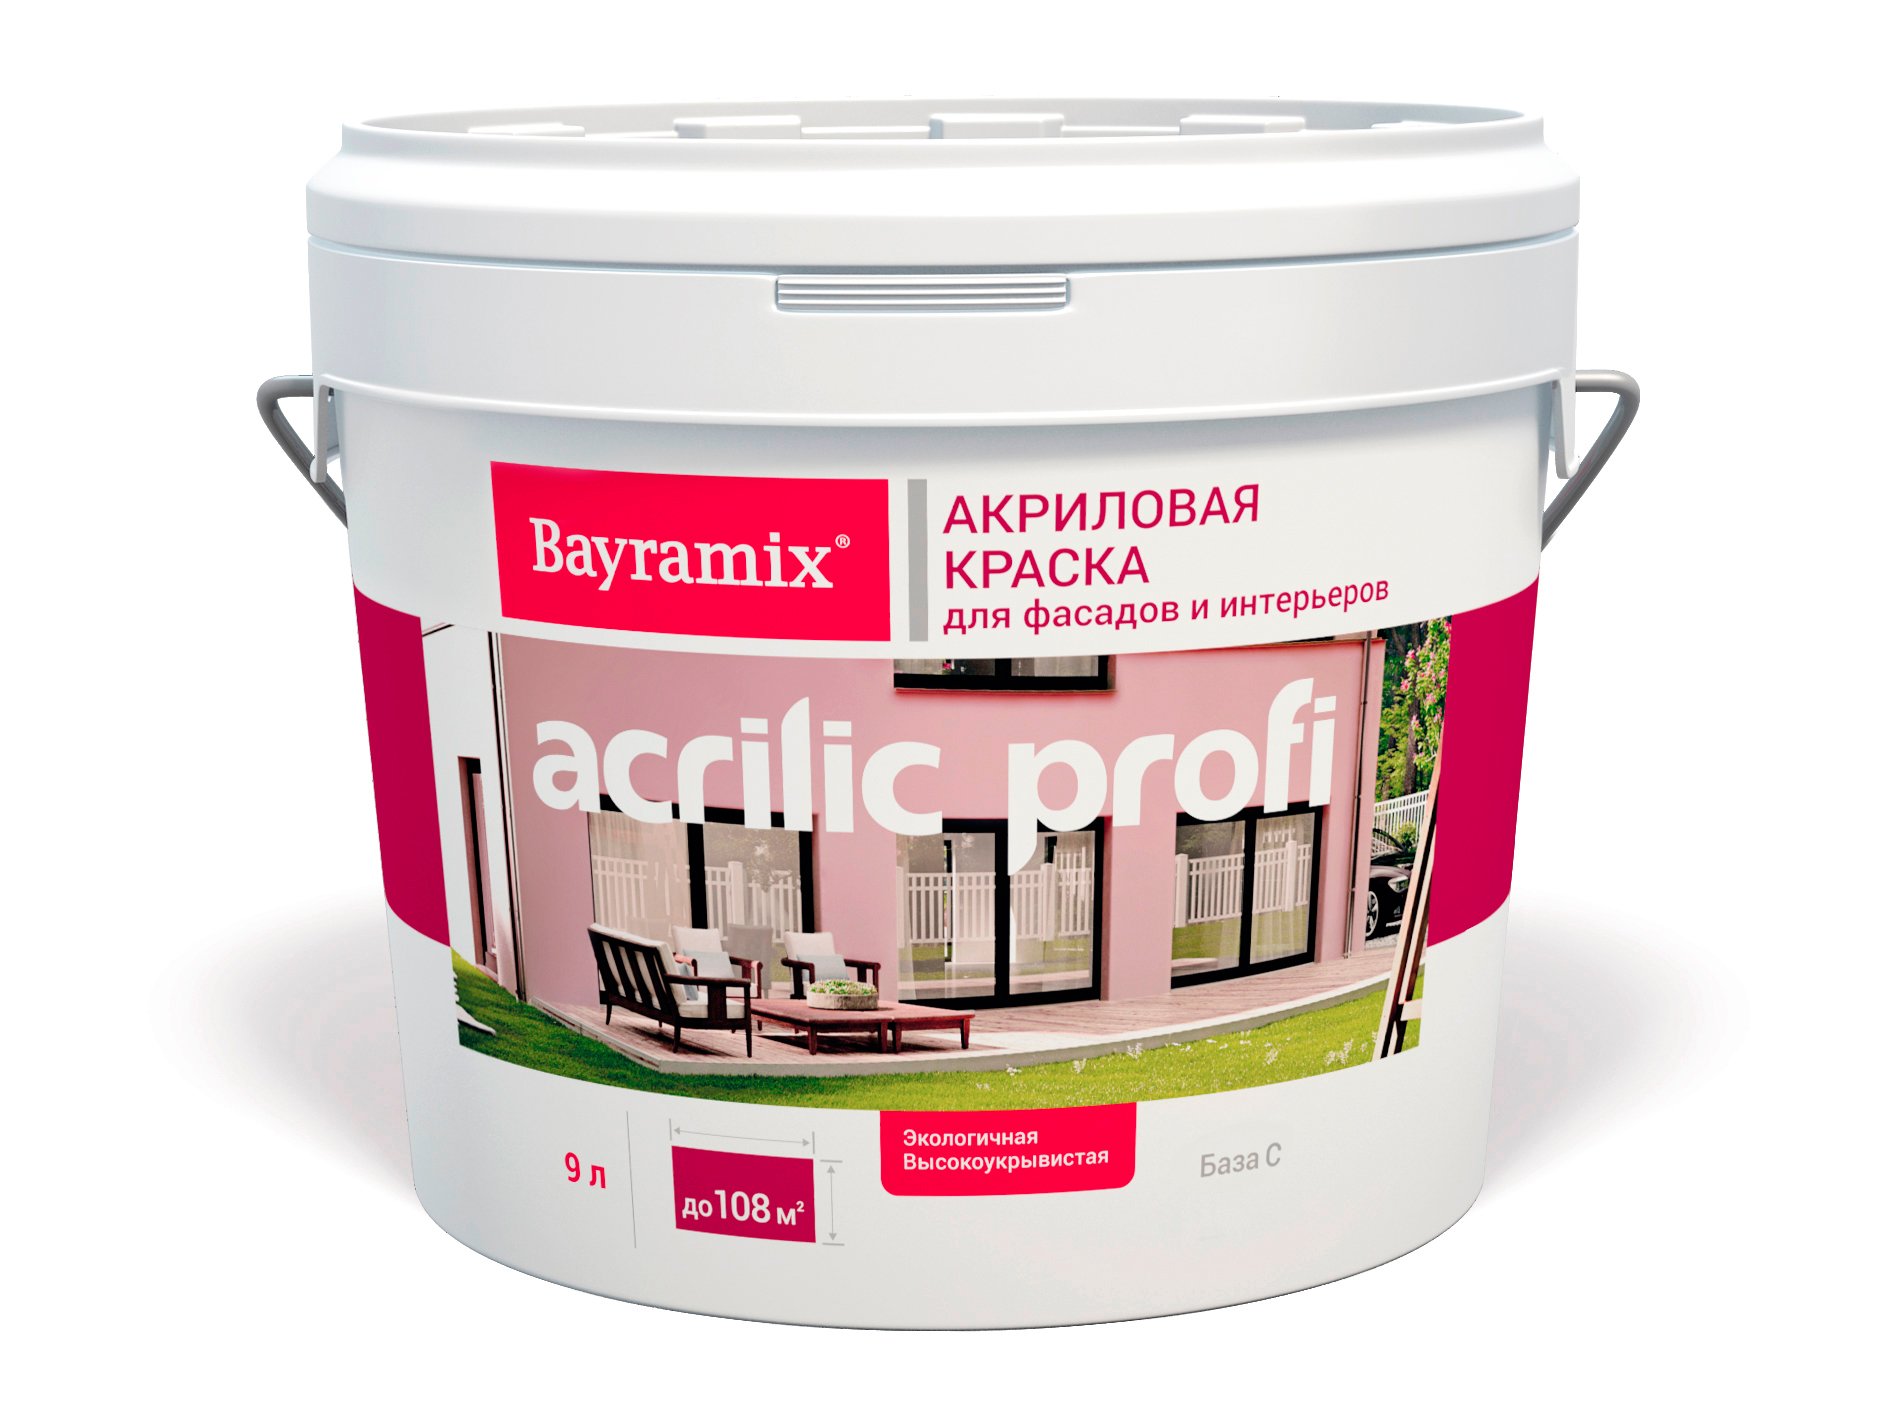 Краска акриловая матовая Bayramix Acrilic Profi BAPC-125/090, База C, бесцветная, 9,0 л